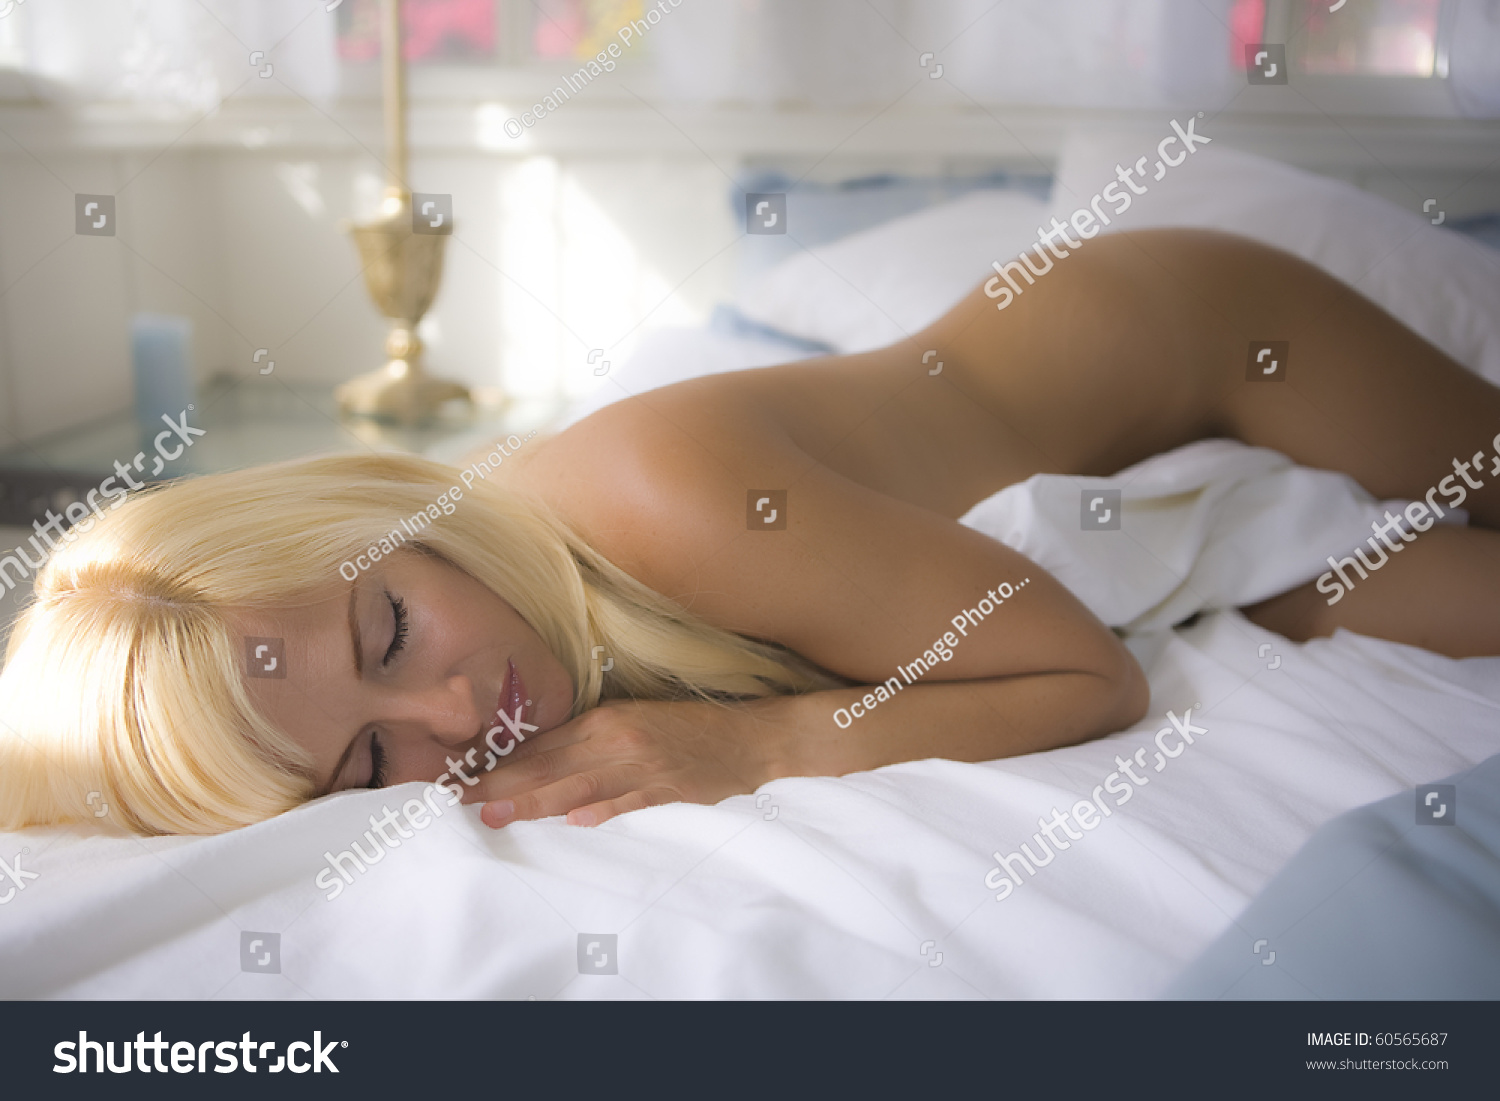 Beautiful Sleeping Woman Nude Stock